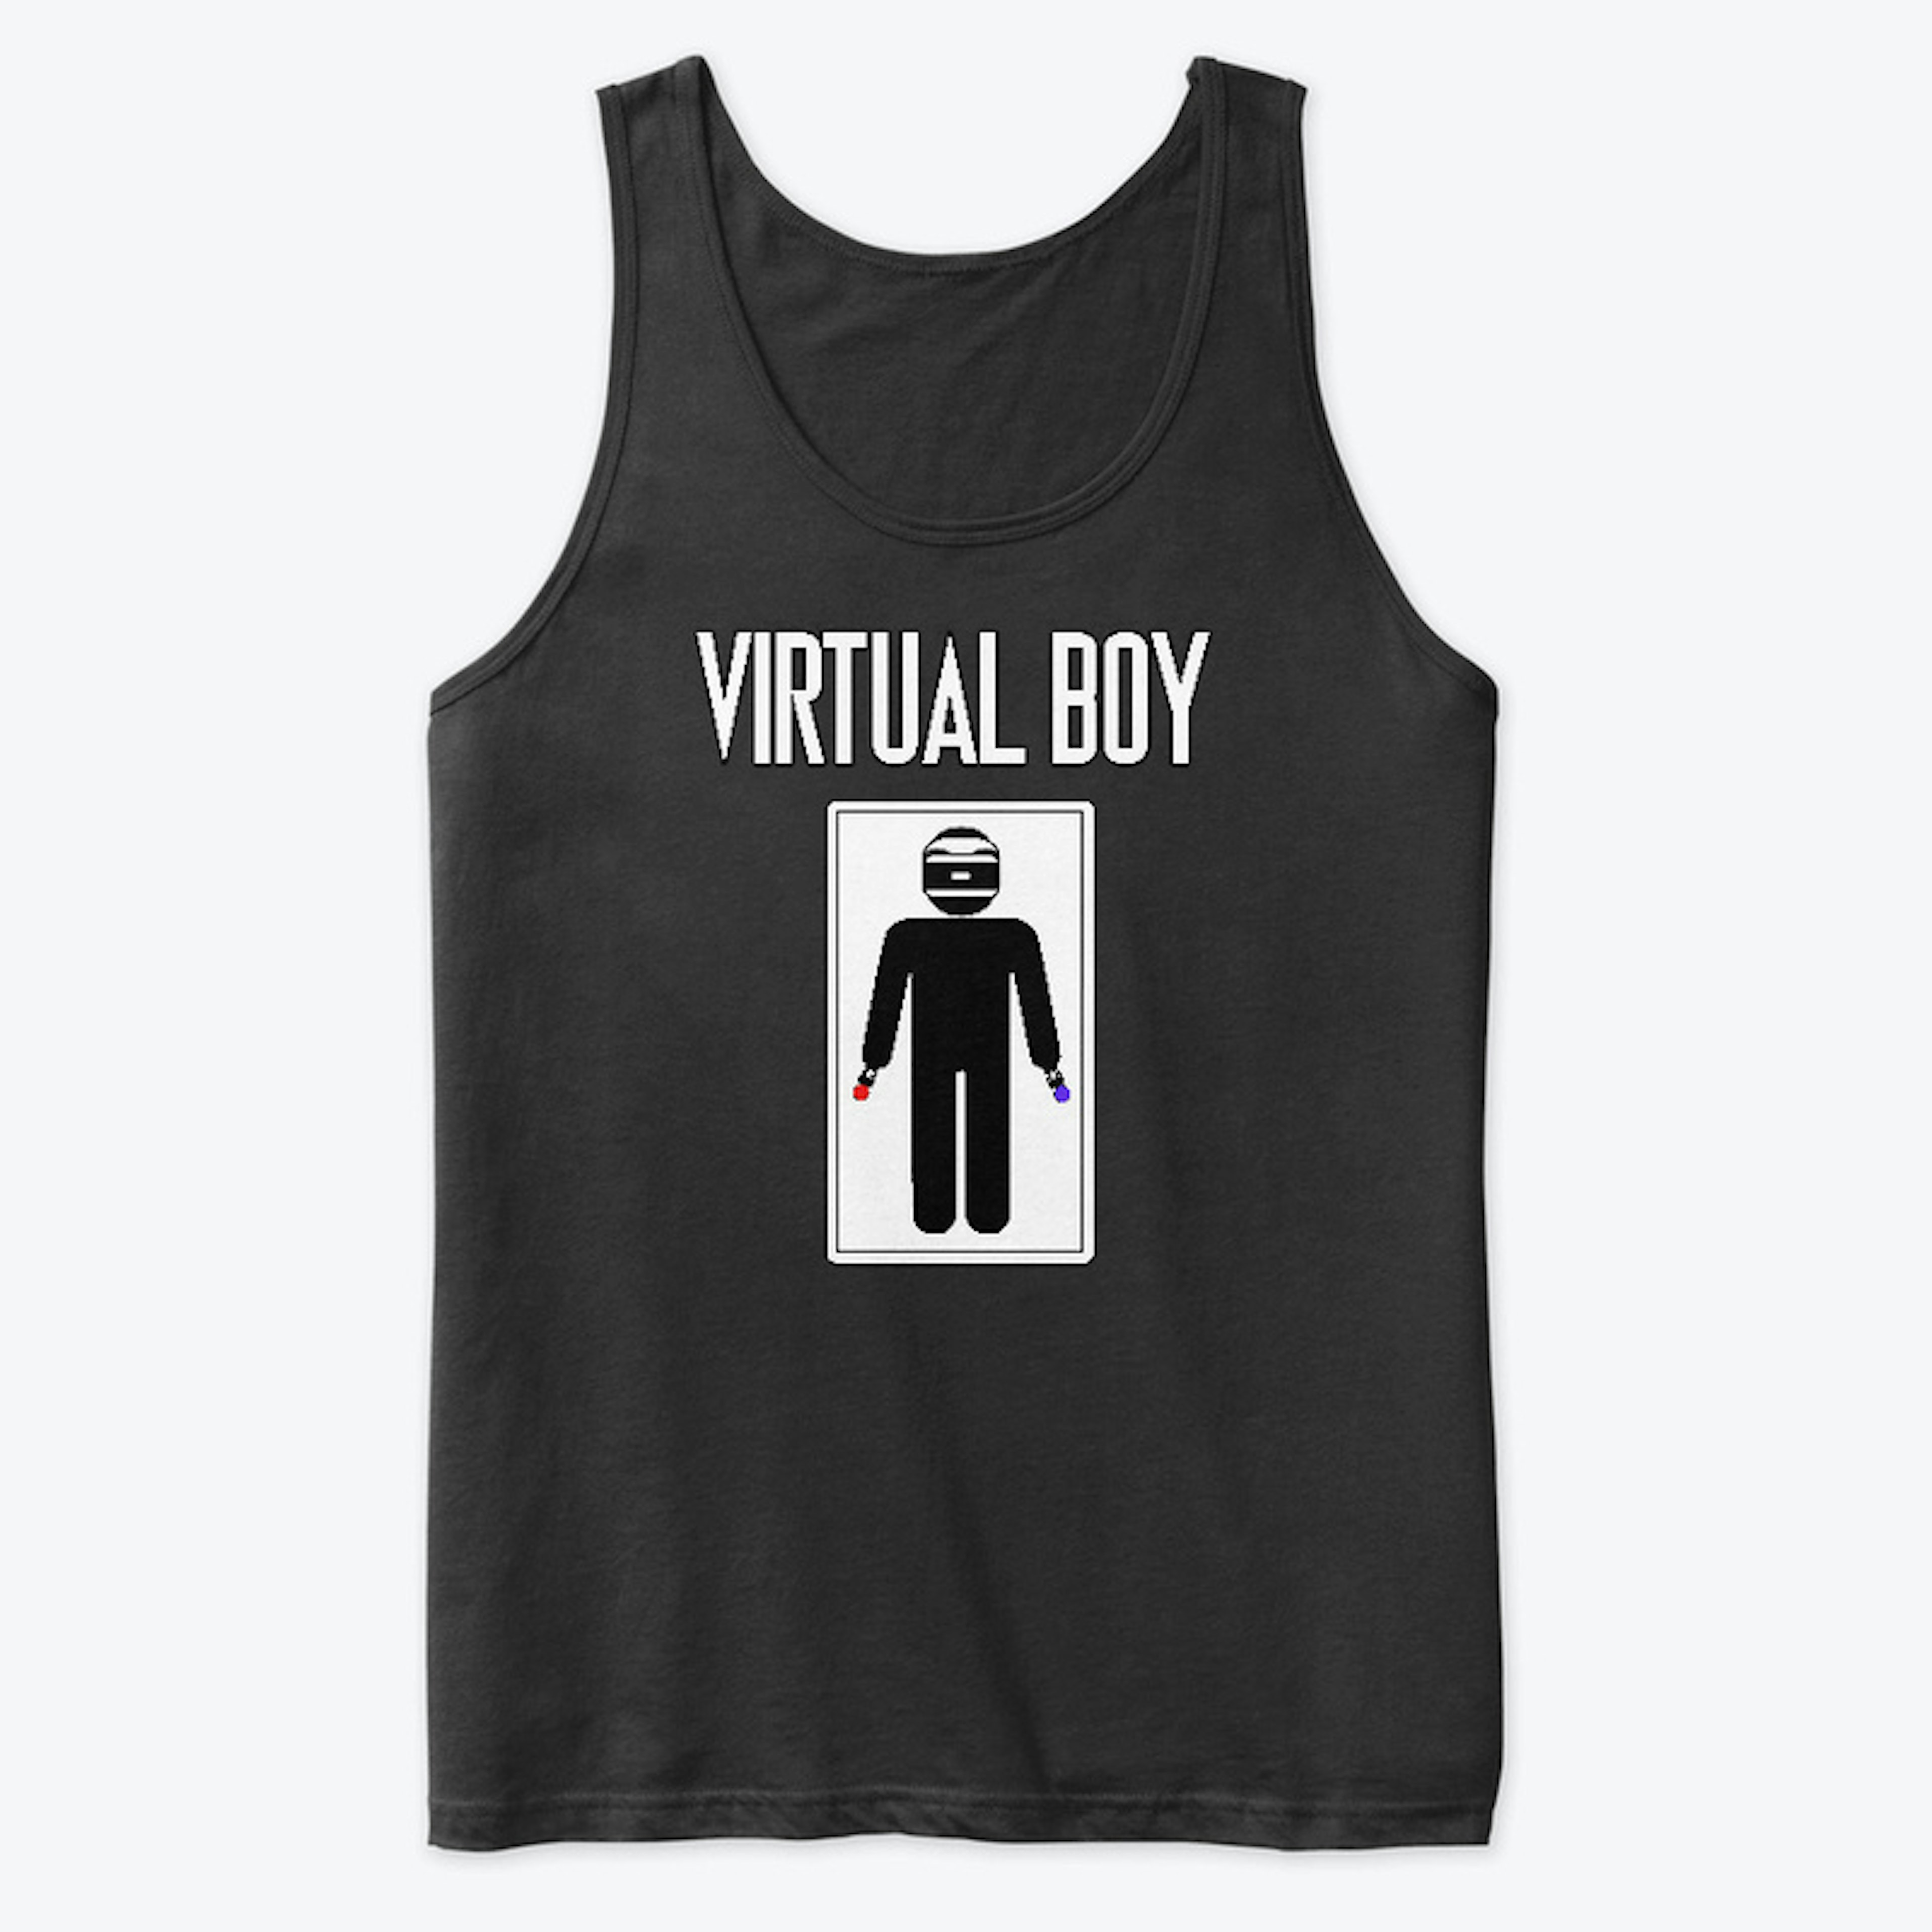 Virtual Boy (PS)